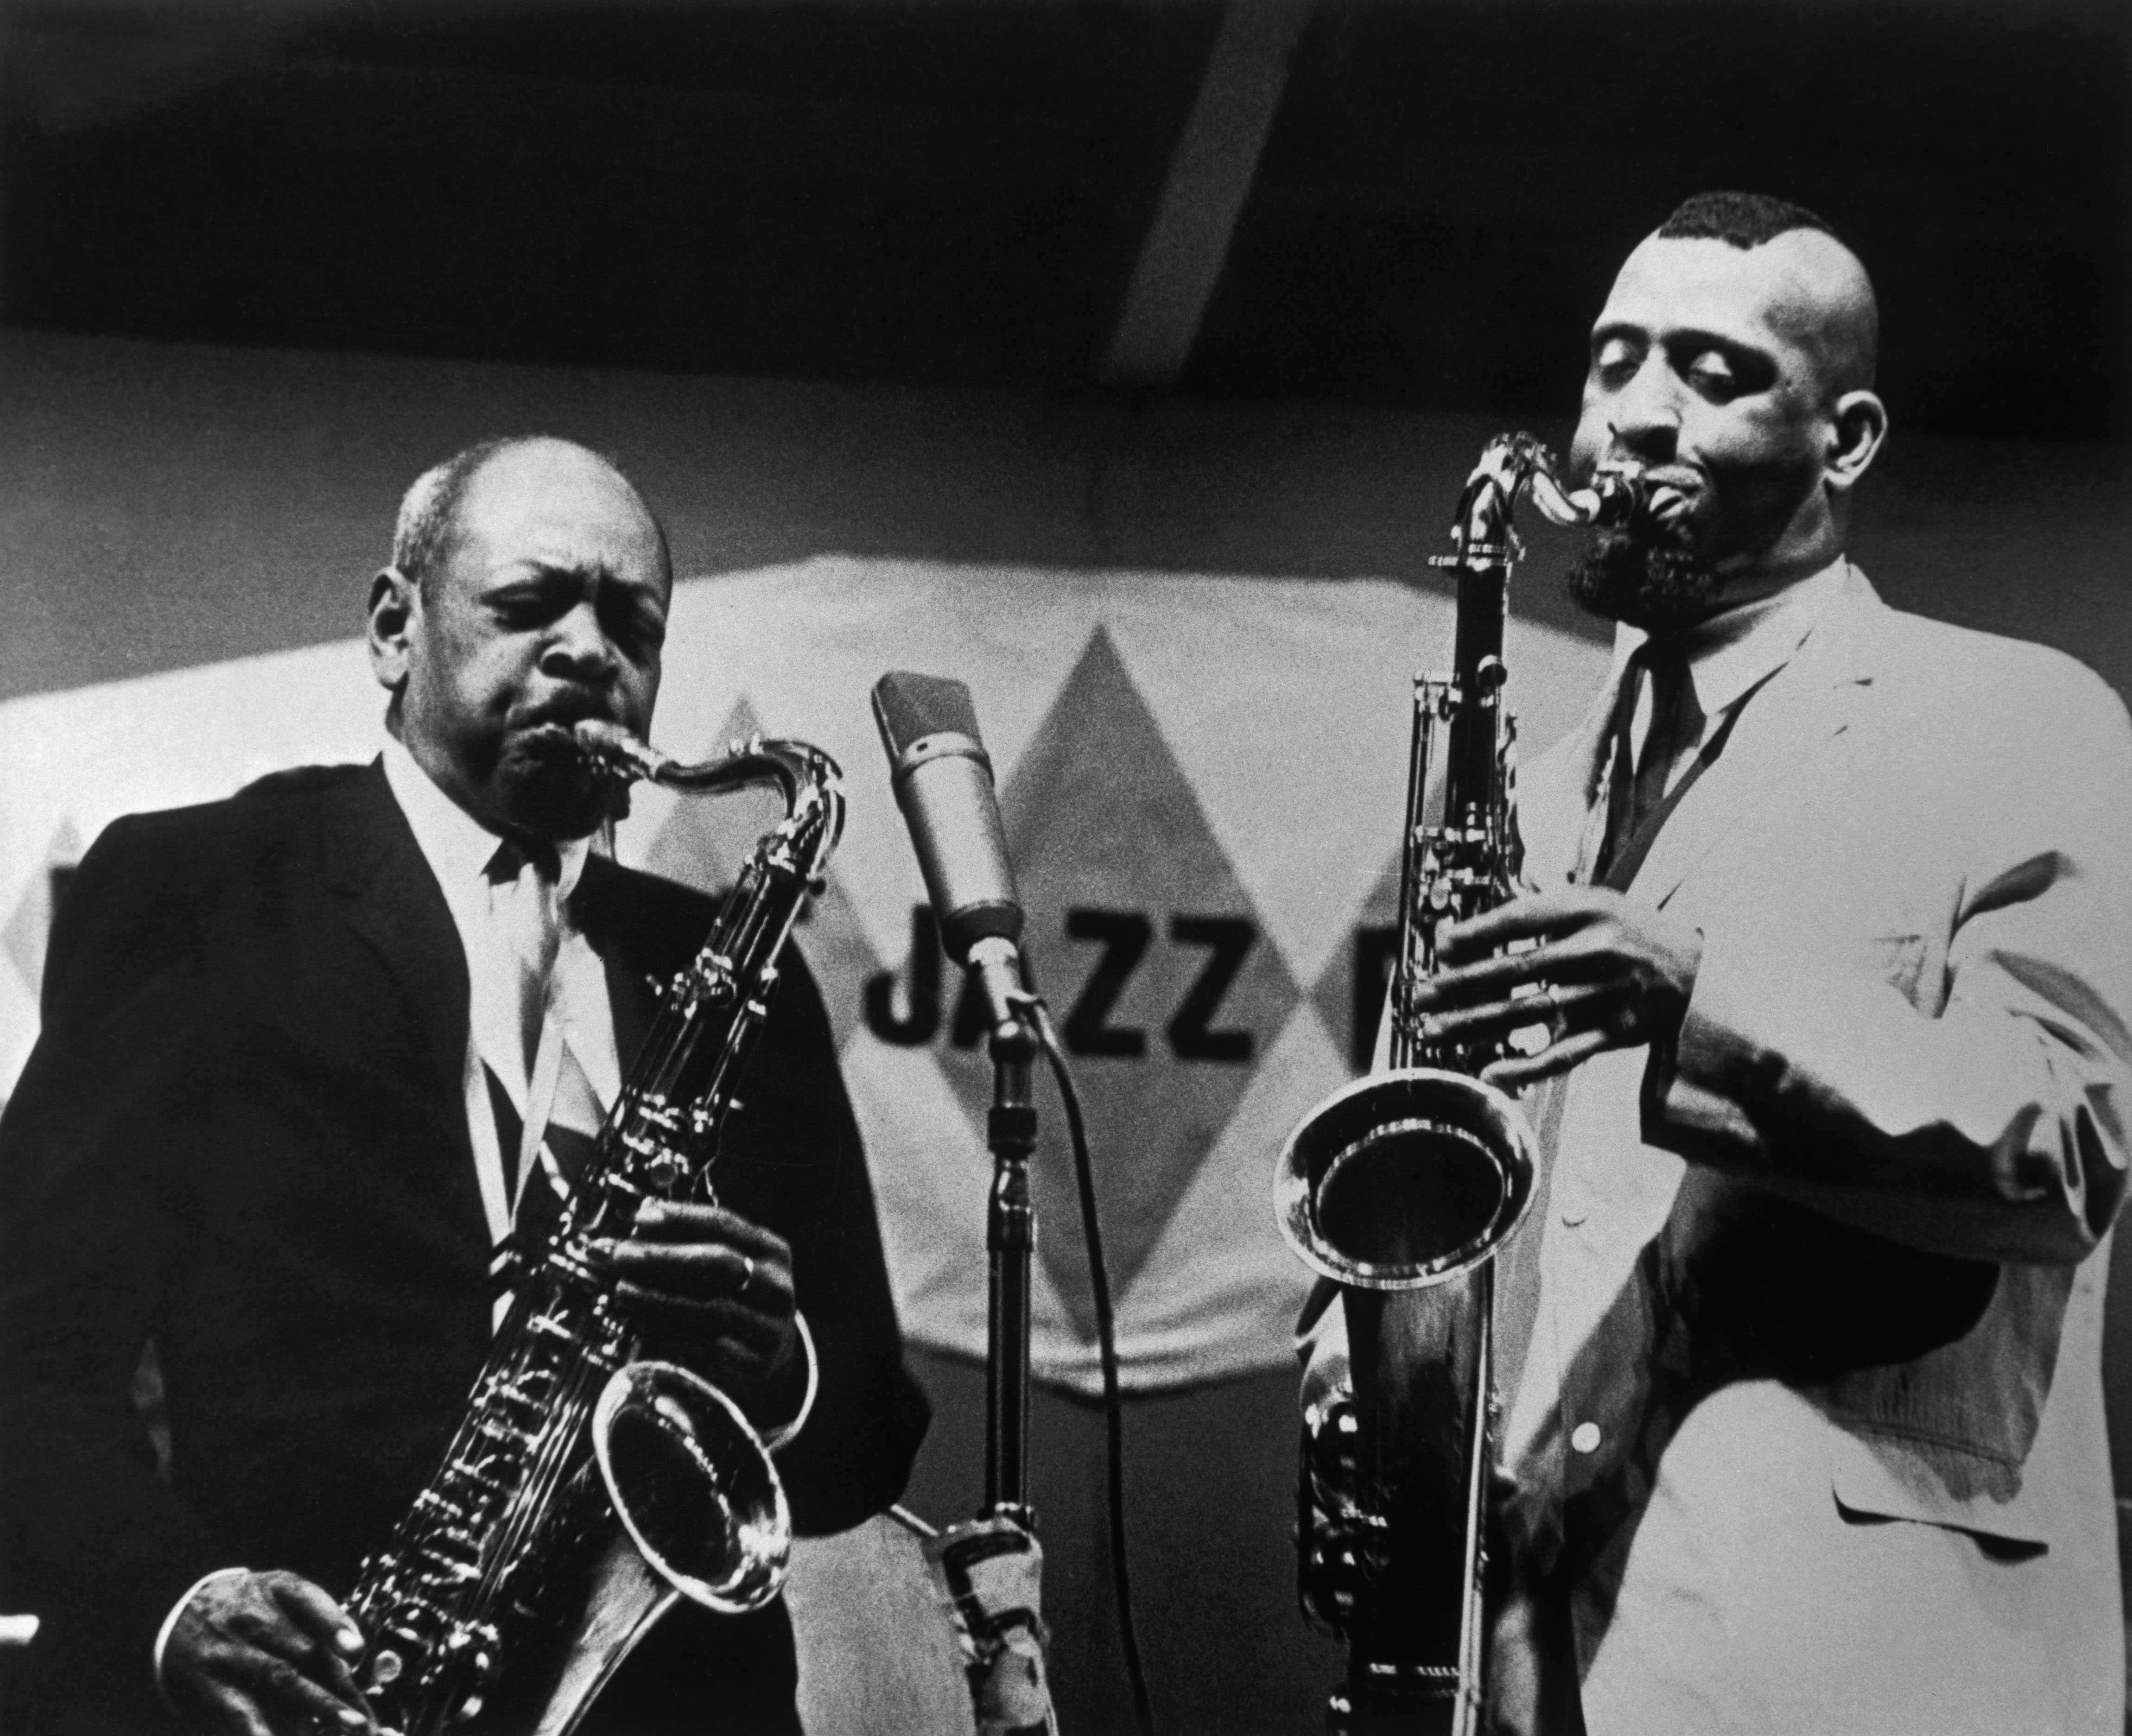 1963: Sonny Rollins suona con Coleman Hawkins, uno dei giganti del jazz di ogni tempo. Newport, (Rhode Island, U.S.A.).